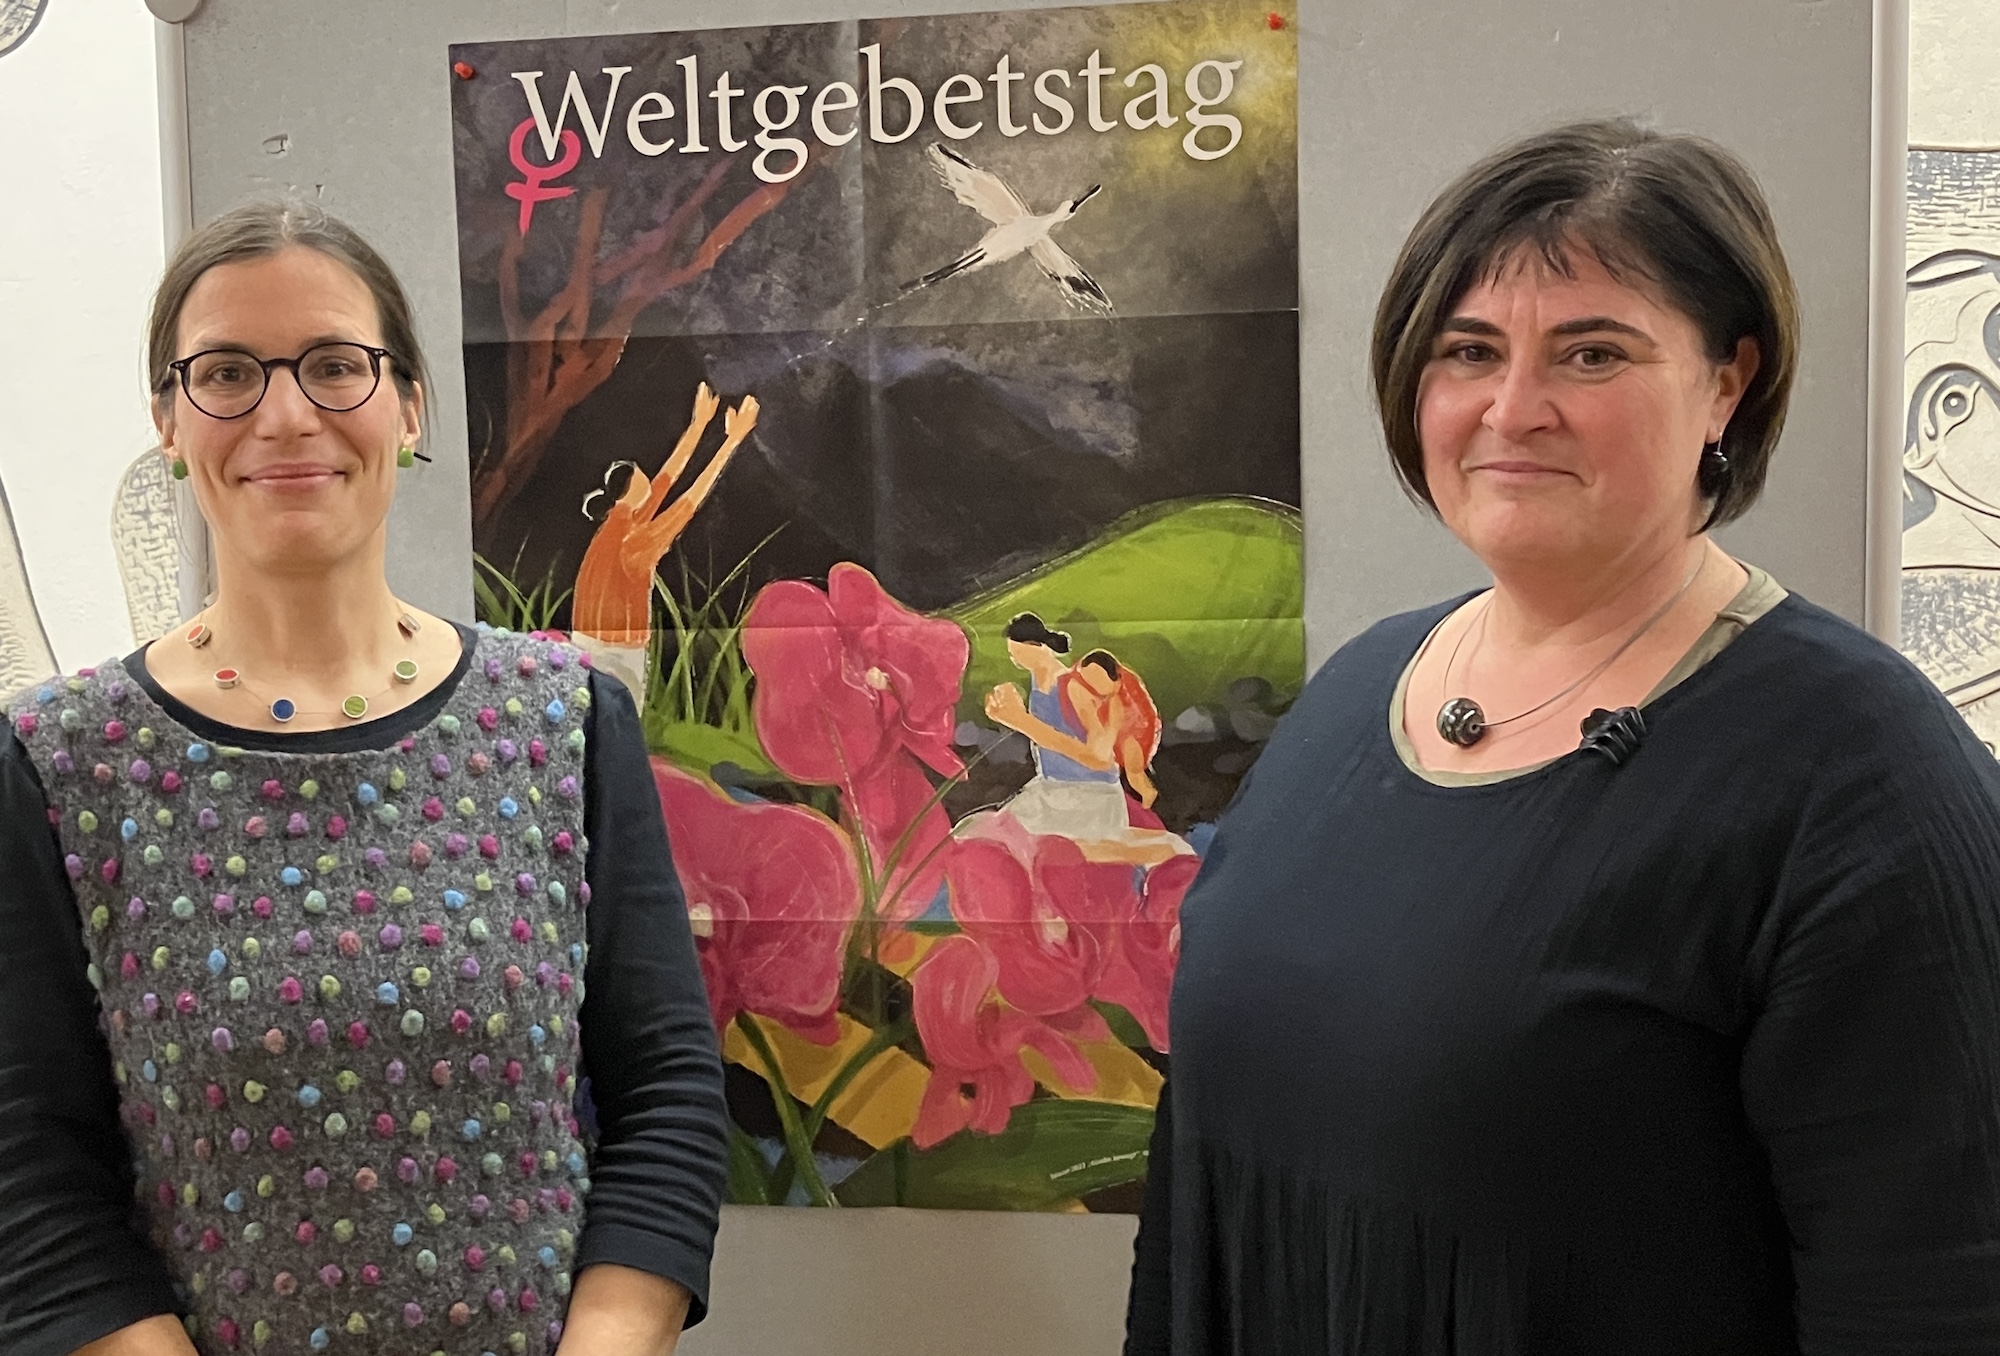 Nach zwei digitalen Werkstätten haben sich Annette Jantzen (l.) und Petra Graff erstmals in Präsenz mit den Frauen zur Vorbereitung getroffen. (c) Andrea Thomas